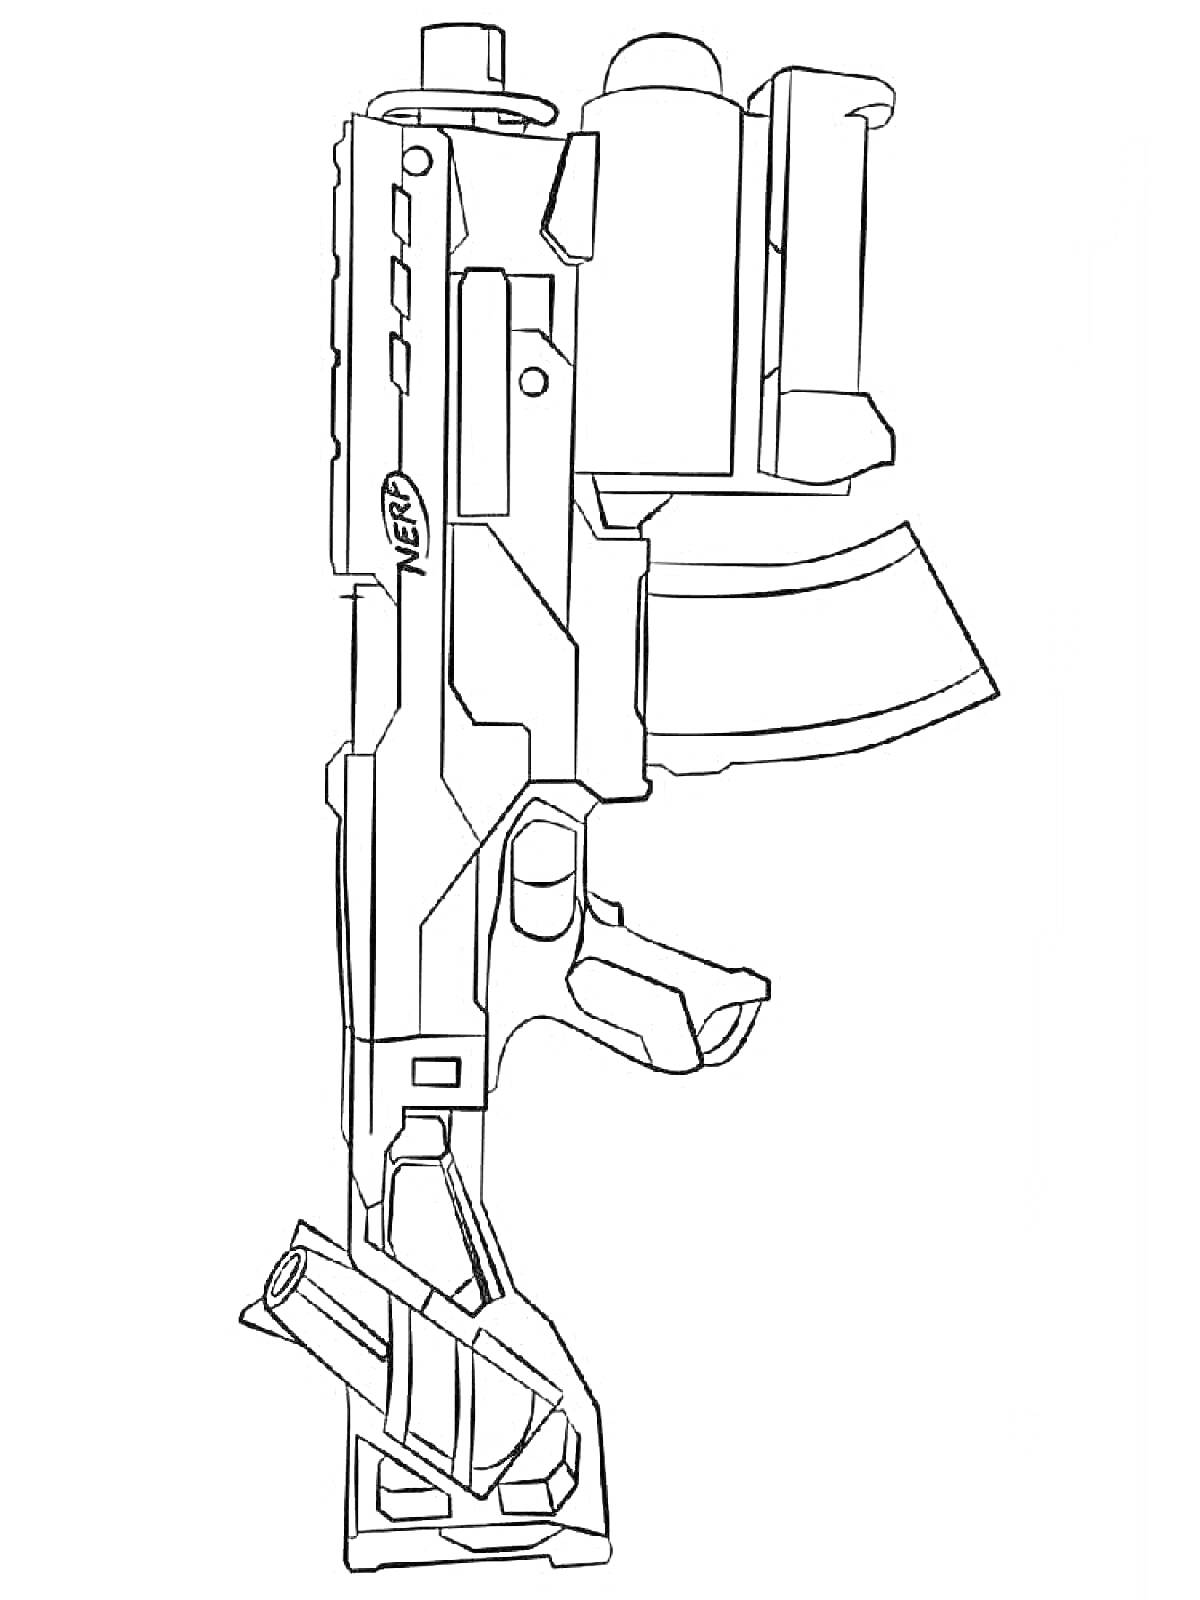 Игрушечное ружье NERF с прицелом, магазином и передней рукояткой